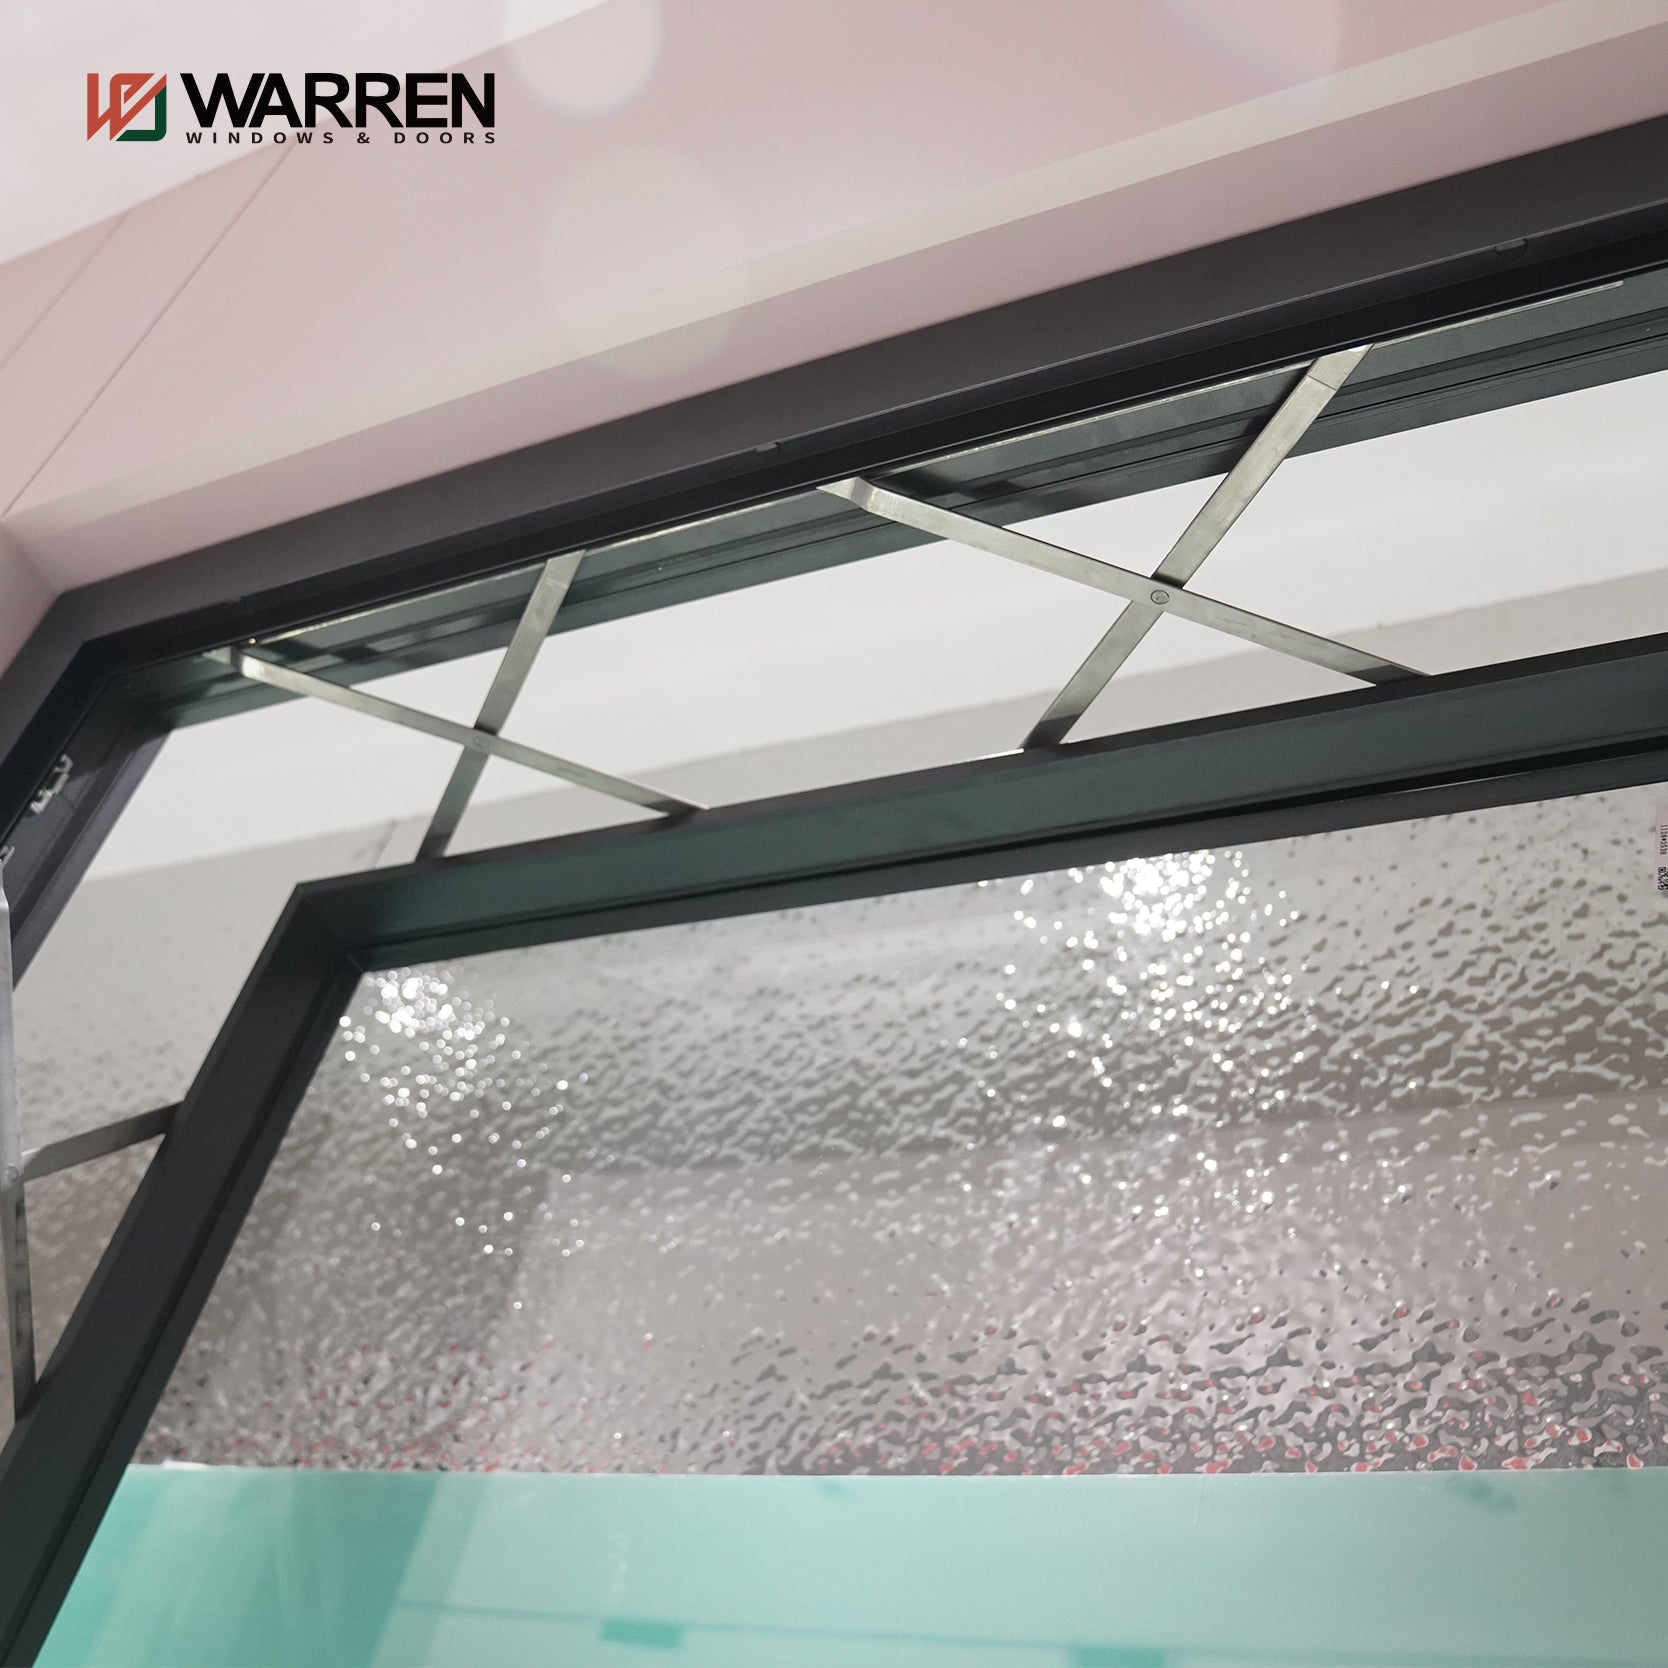 Warren New Design Good Quality Glass Casement Windows Out-Opening Window Casement Windows Parts